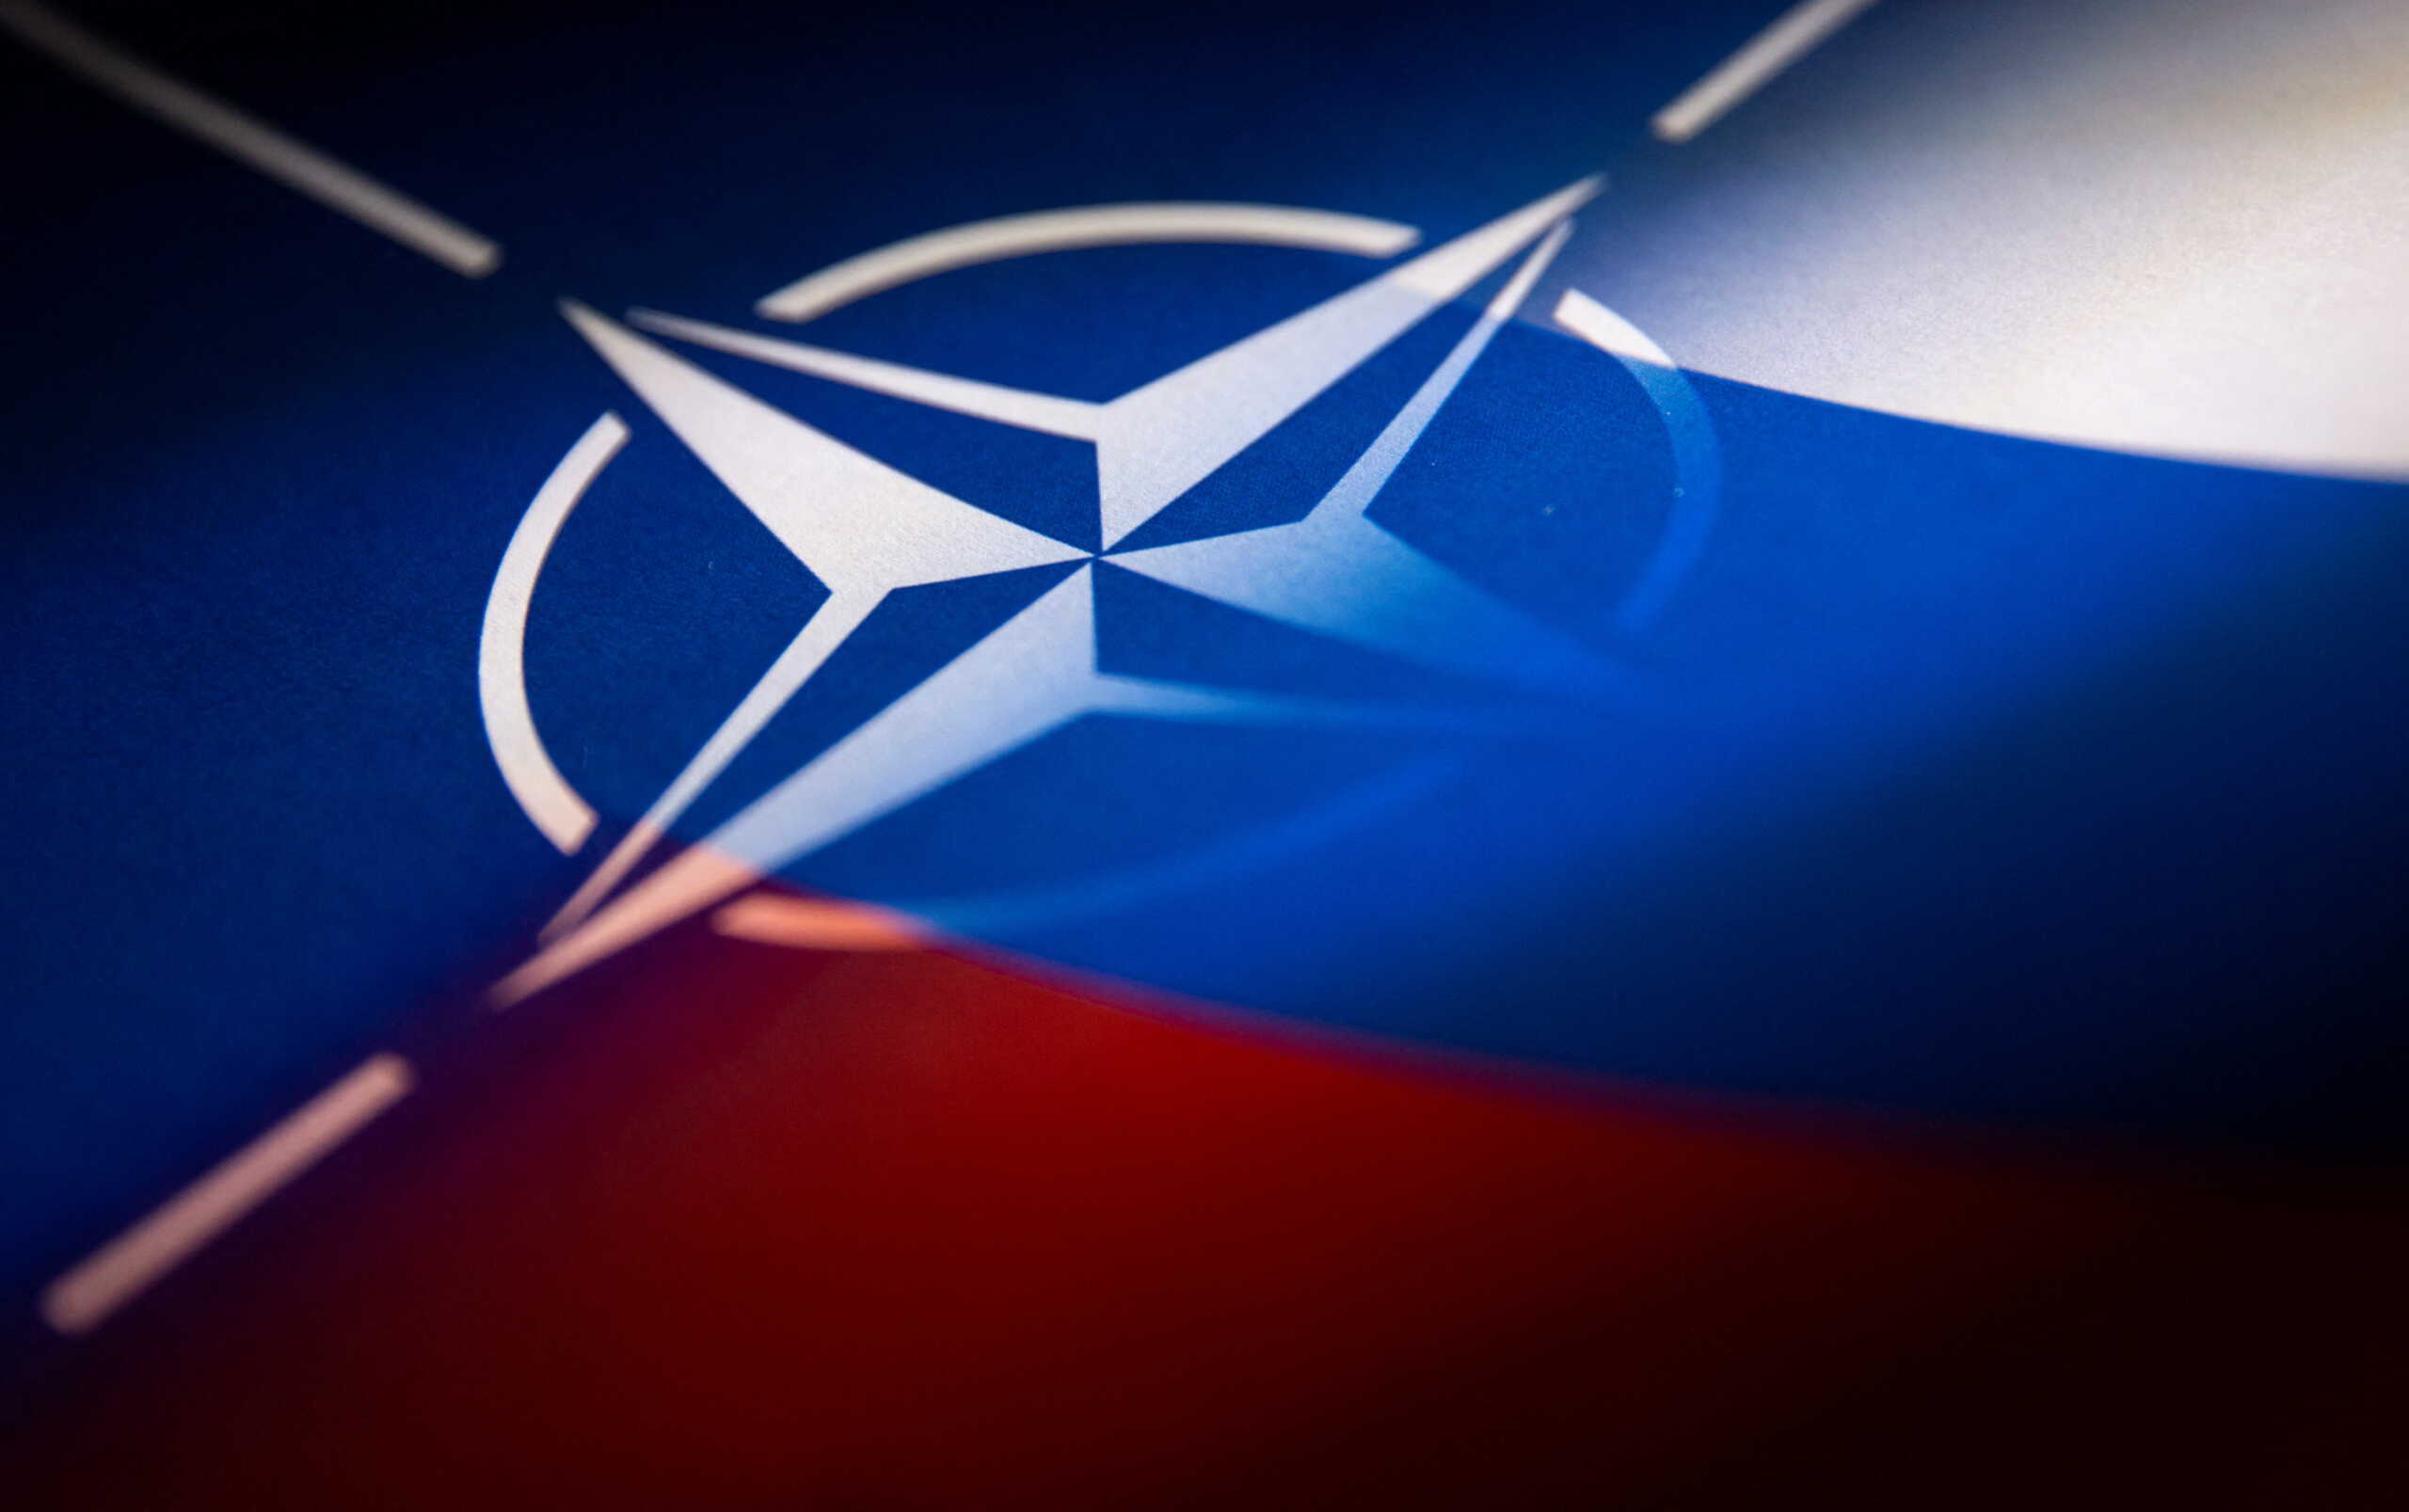 Ρωσία: Ανοιχτοί οι δίαυλοι επικοινωνίας με το ΝΑΤΟ όμως δεν υπάρχουν διπλωματικές σχέσεις